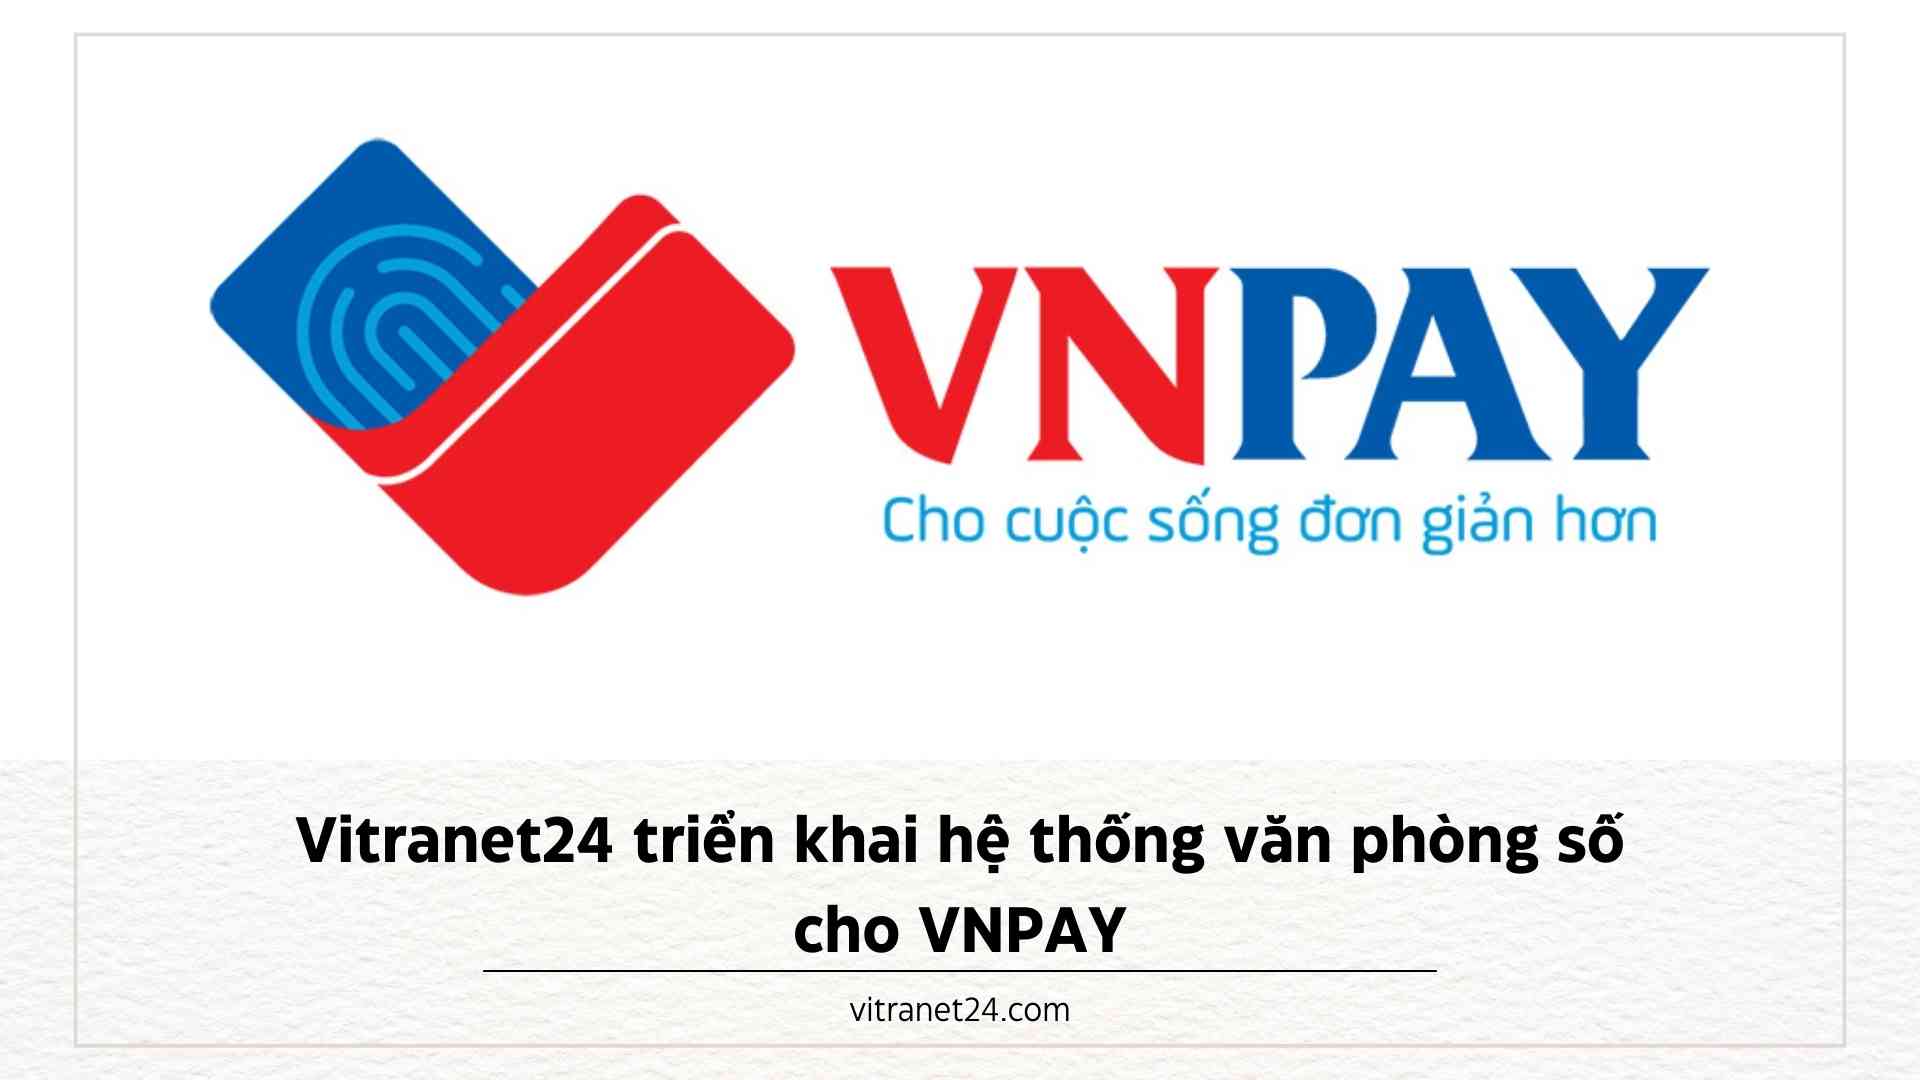 Vitranet24 triển khai hệ thống văn phòng số cho VNPAY